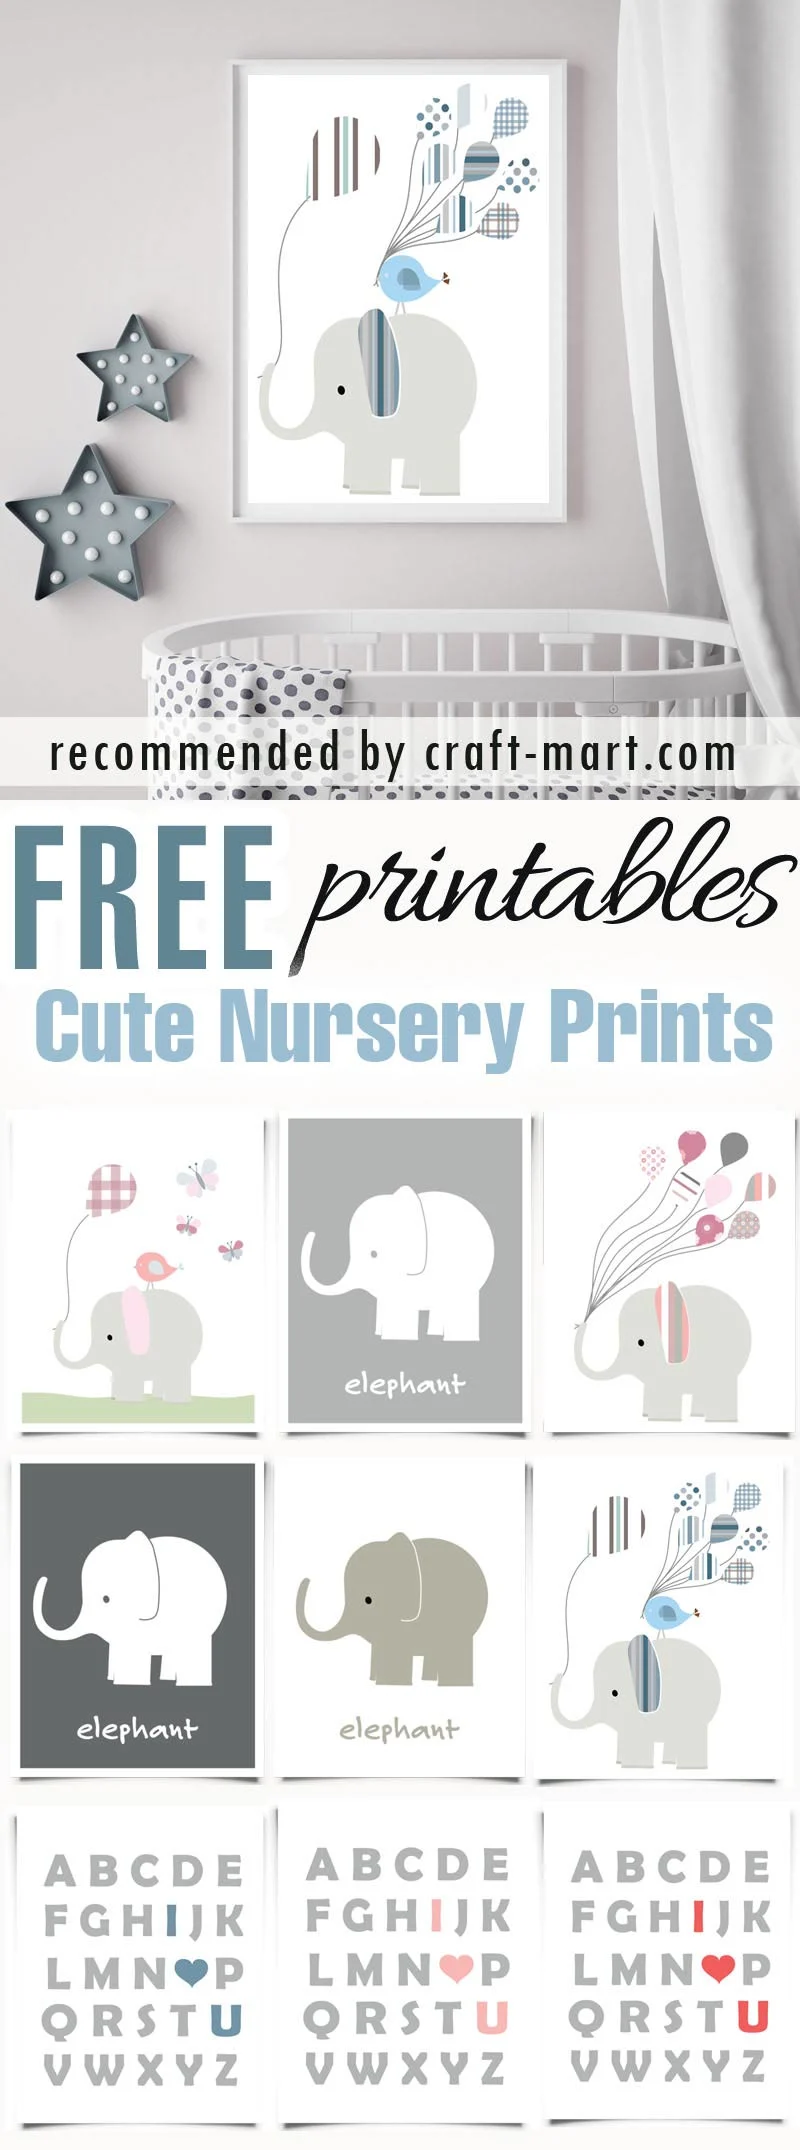 Cute Nursery Prints - Elephants and 'I Love You' ABC (11 free printables)